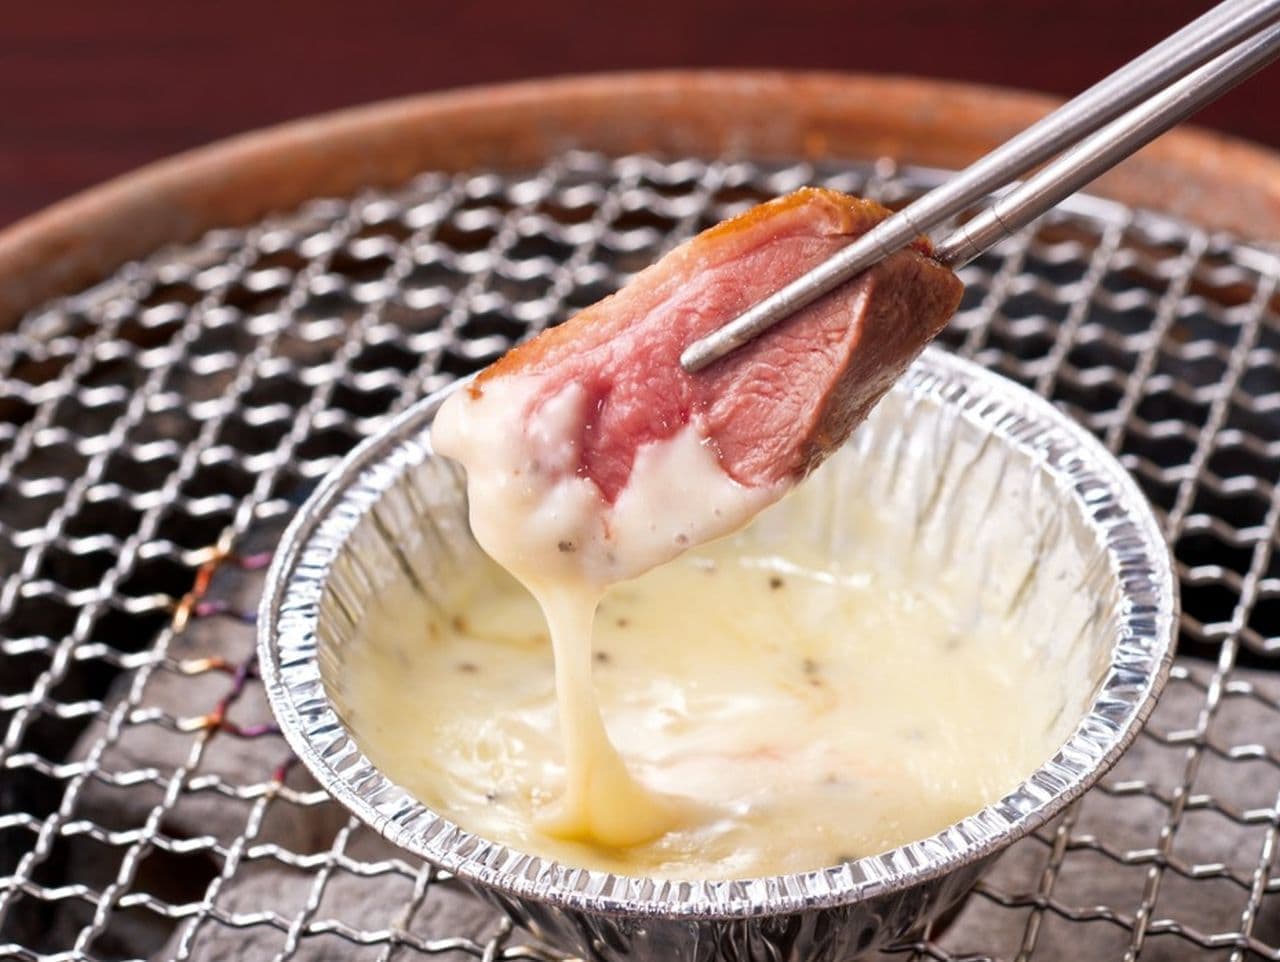 GYU-KAKU "Cheese fondue de duck loin"